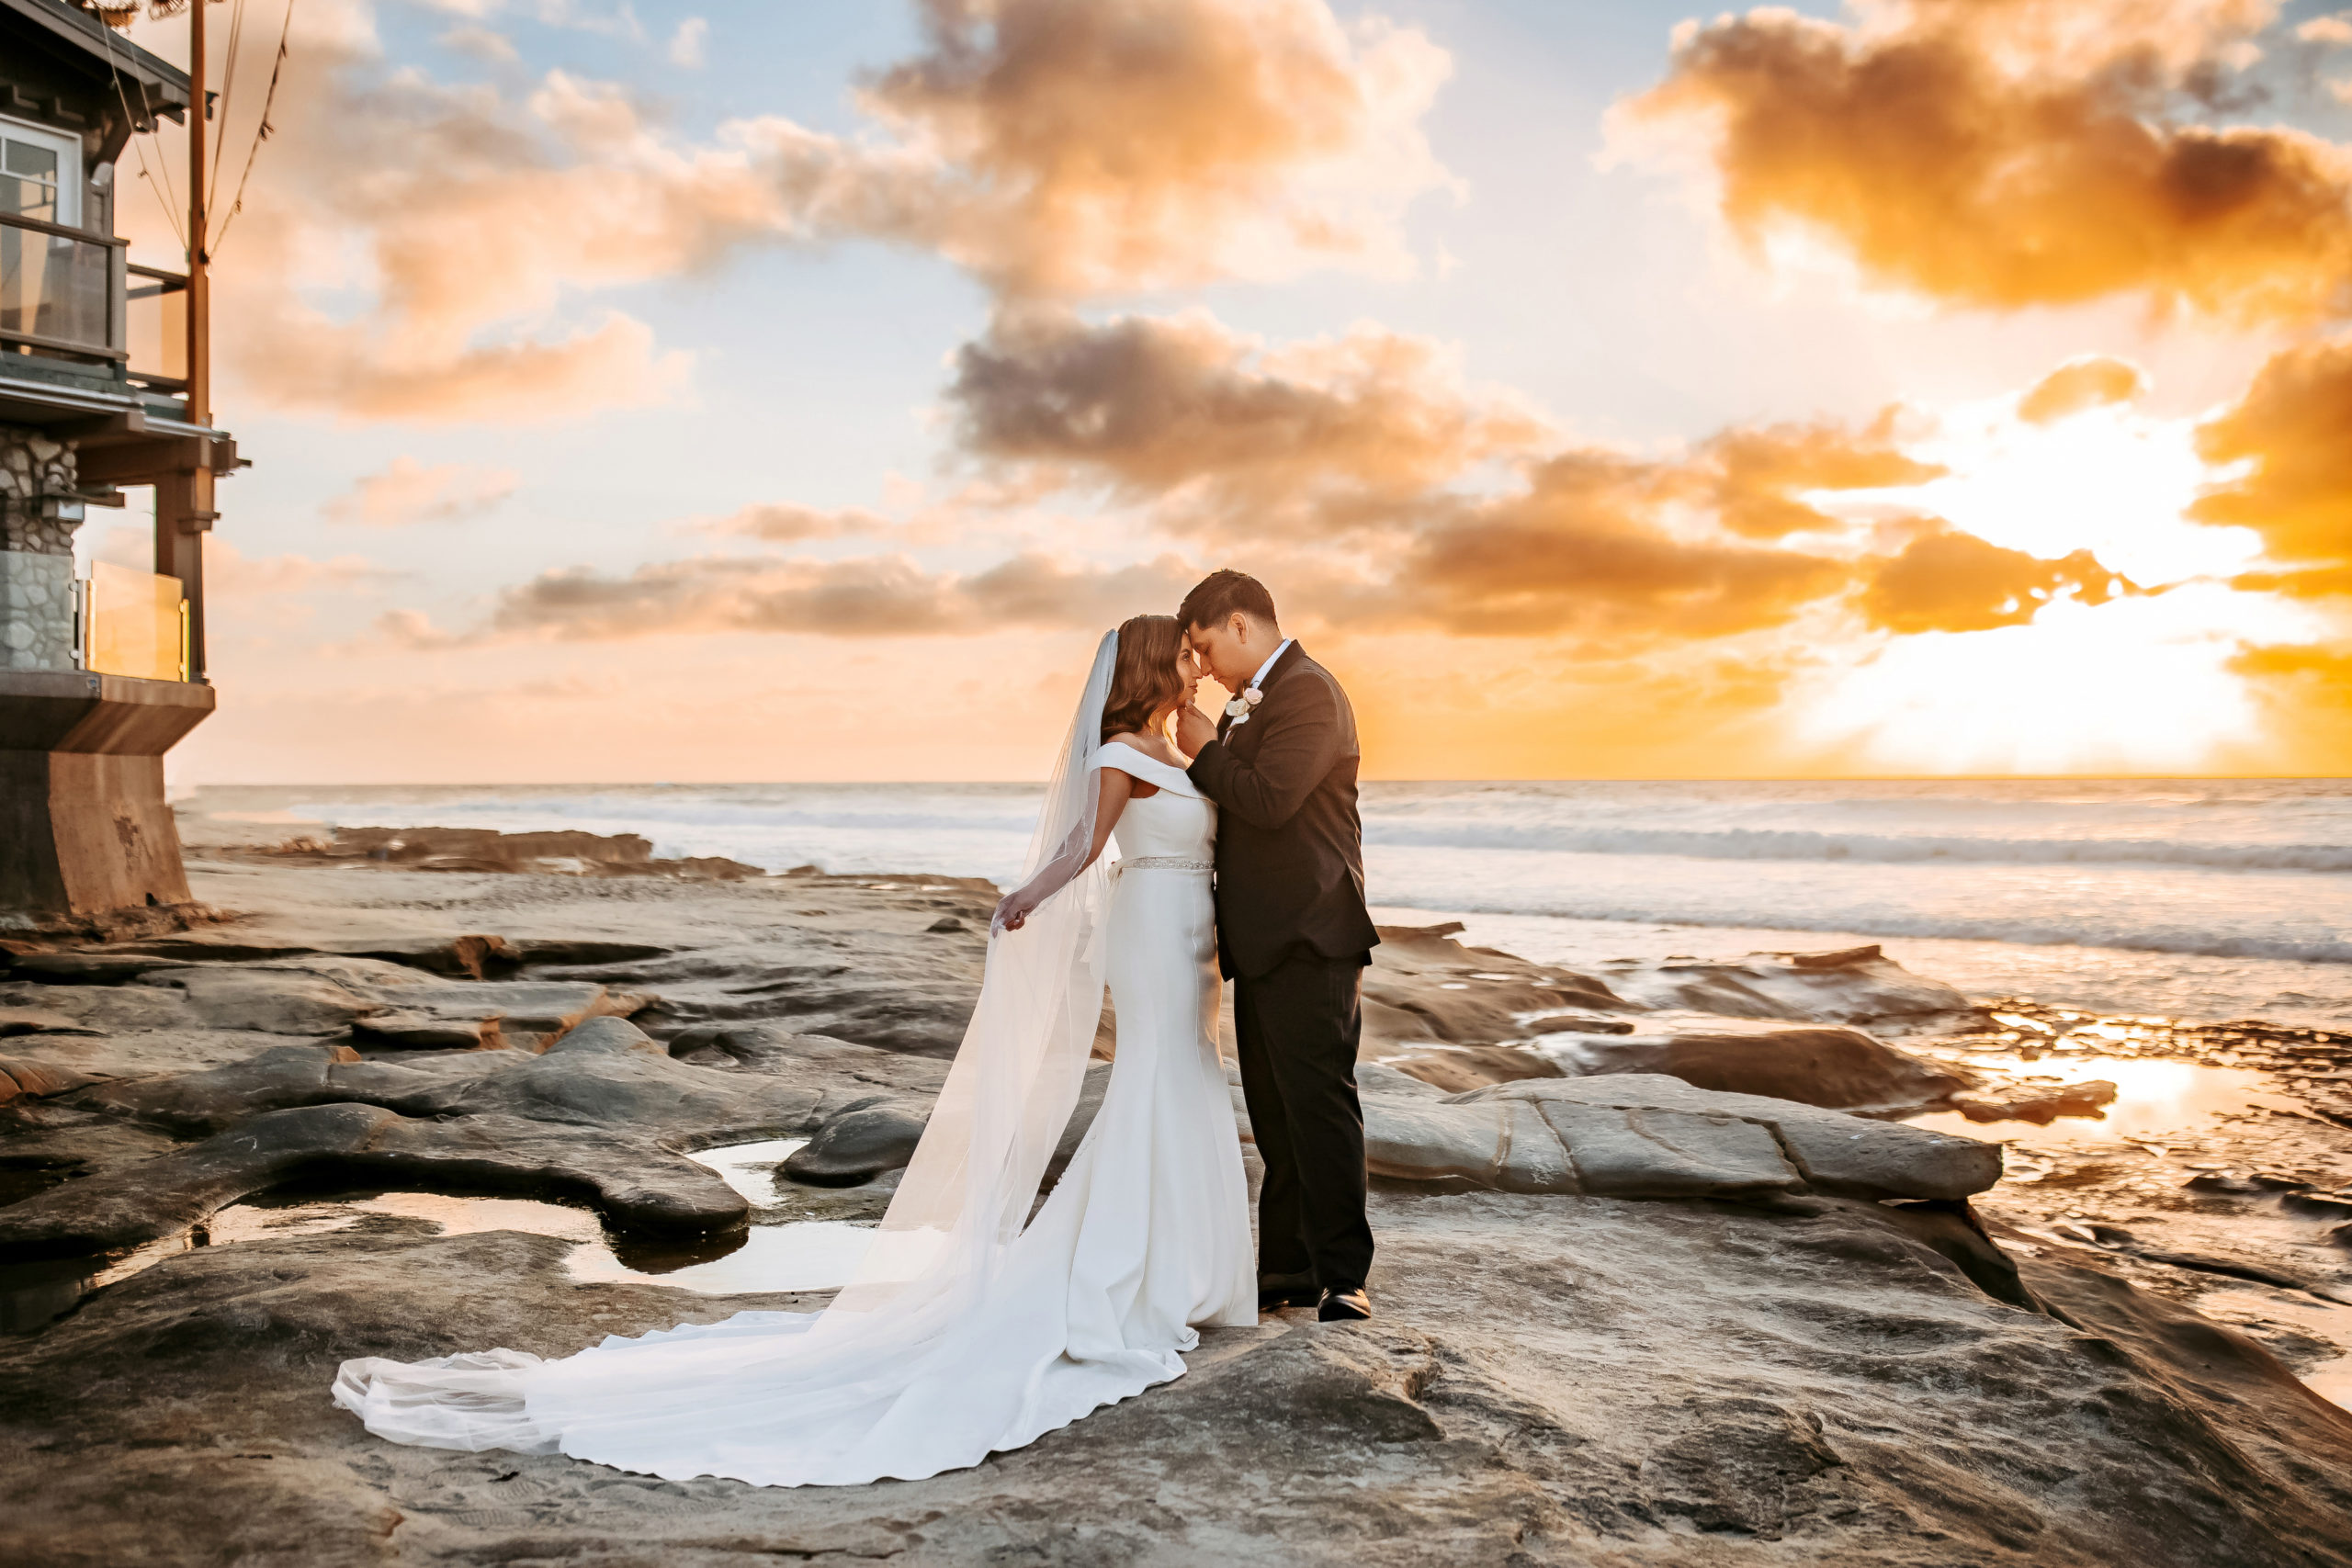 The Darlington house wedding portraits bride and groom beach photos